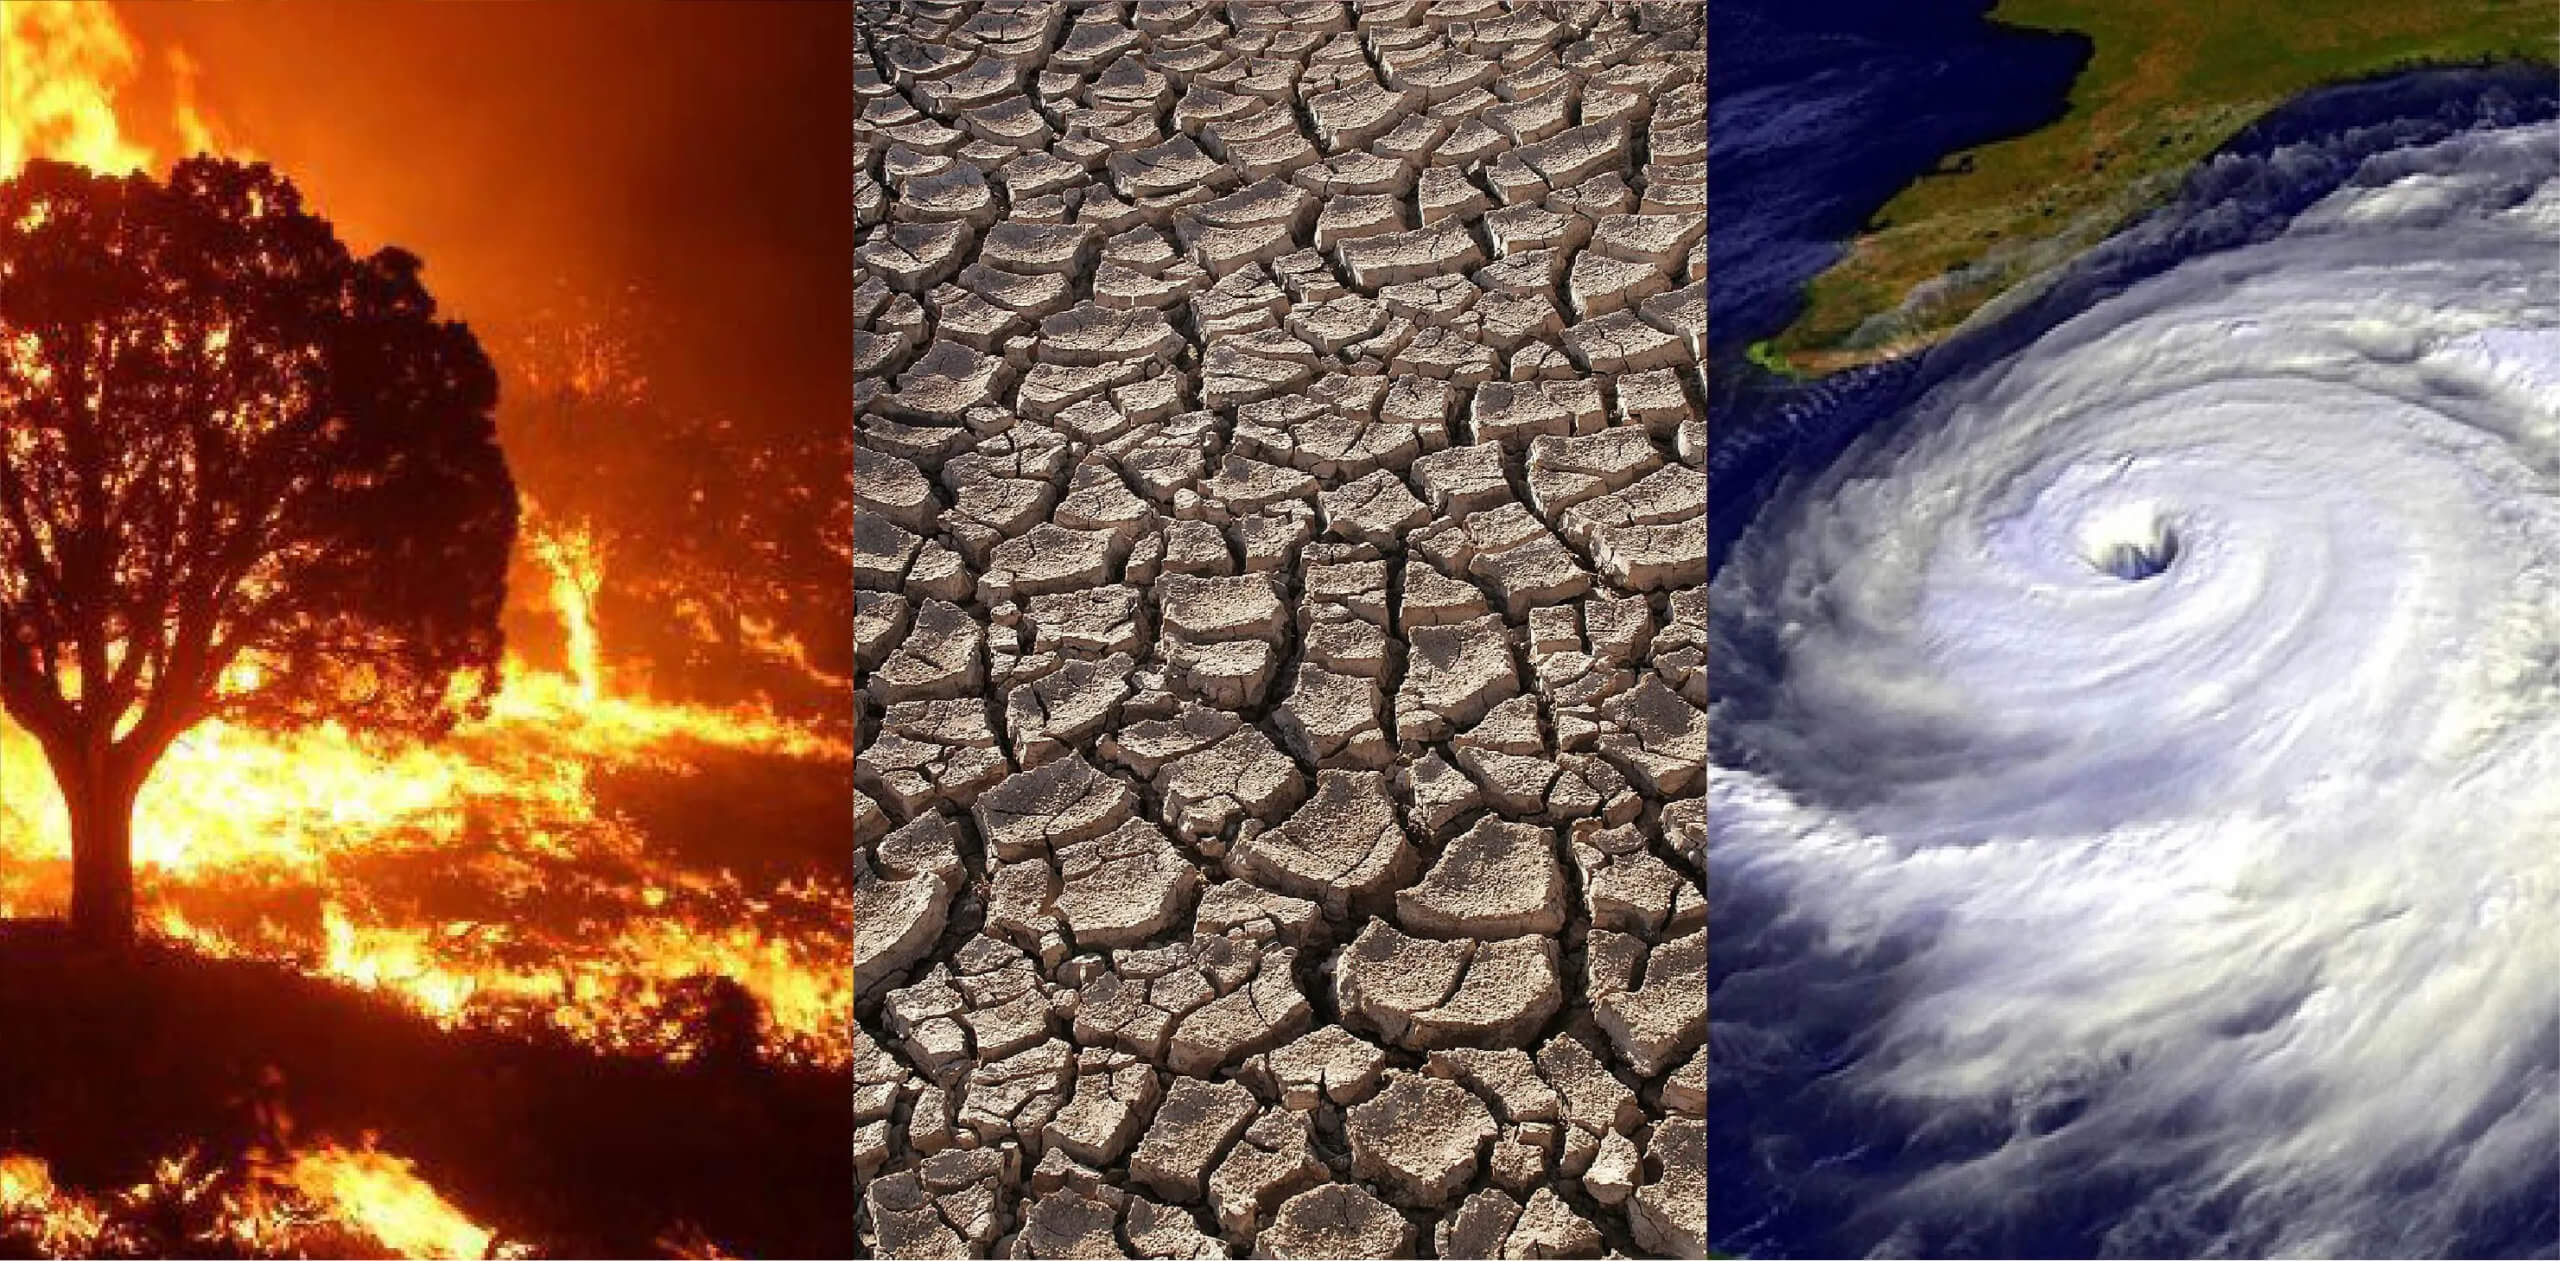 В мире стало больше аномально жарких дней. Последствия изменения климата ощутимы уже сегодня. Изображение: Nasa.com. Фото.